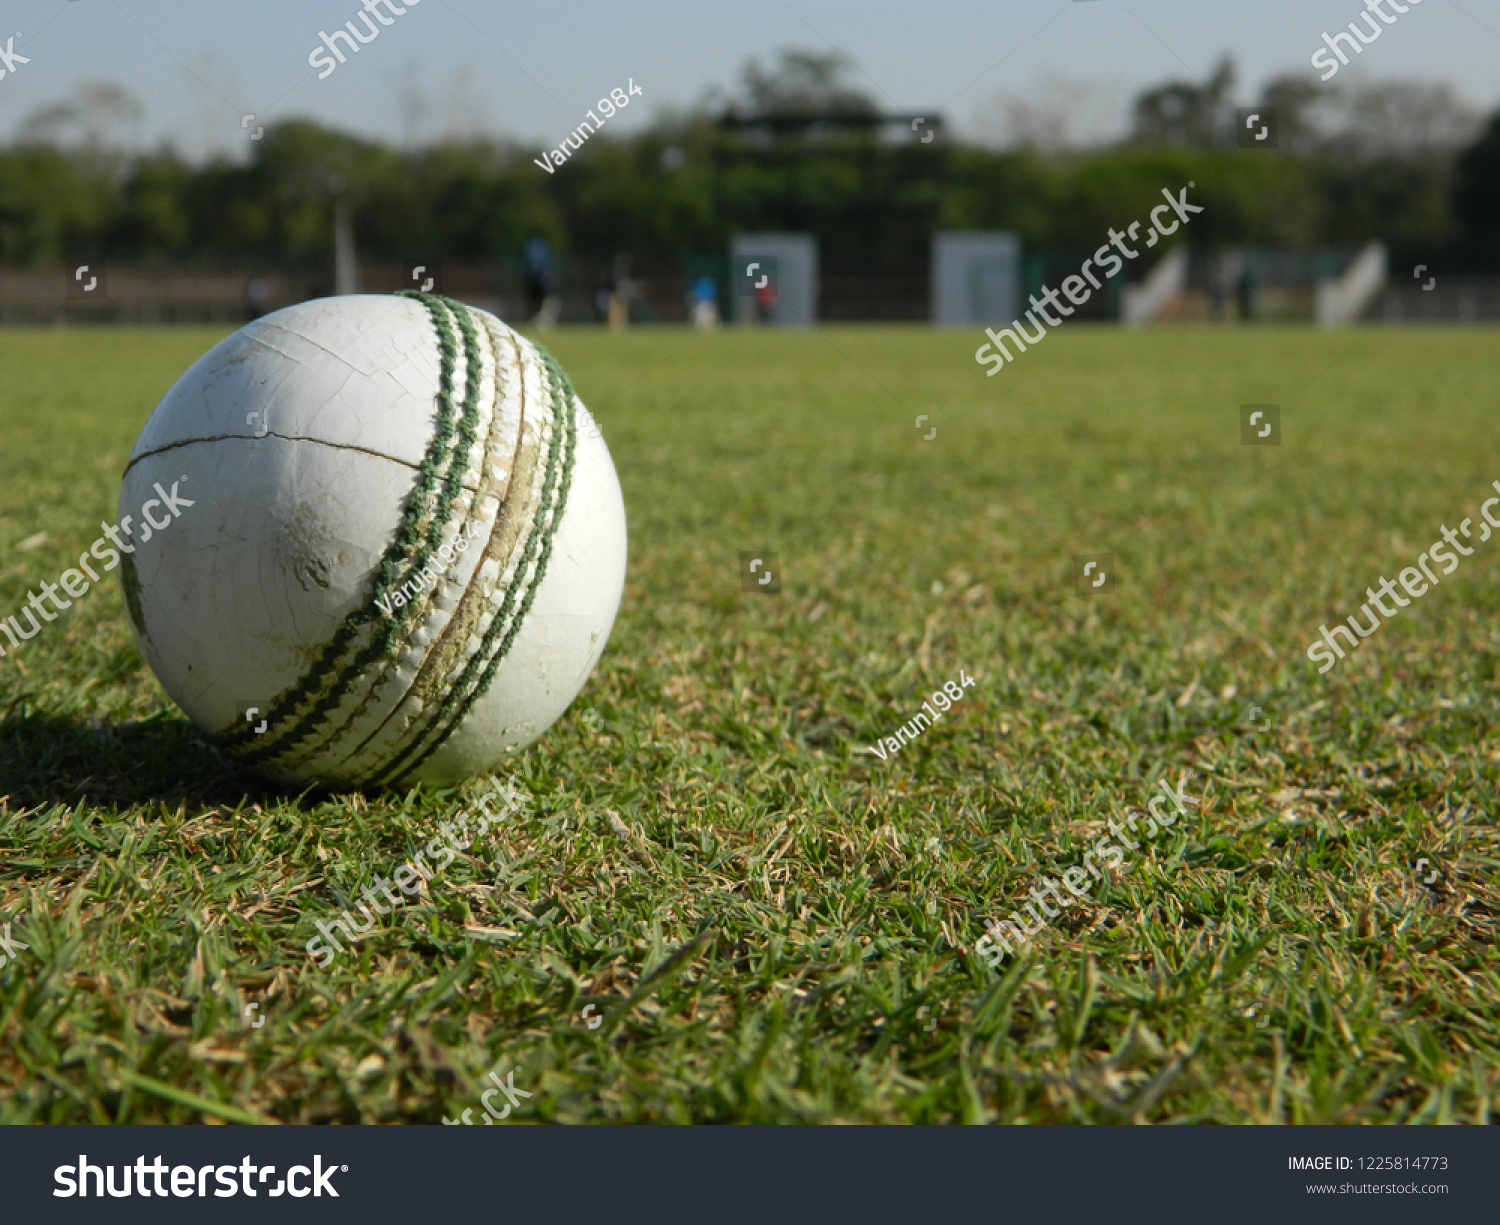 Cricket ground game #1225814773